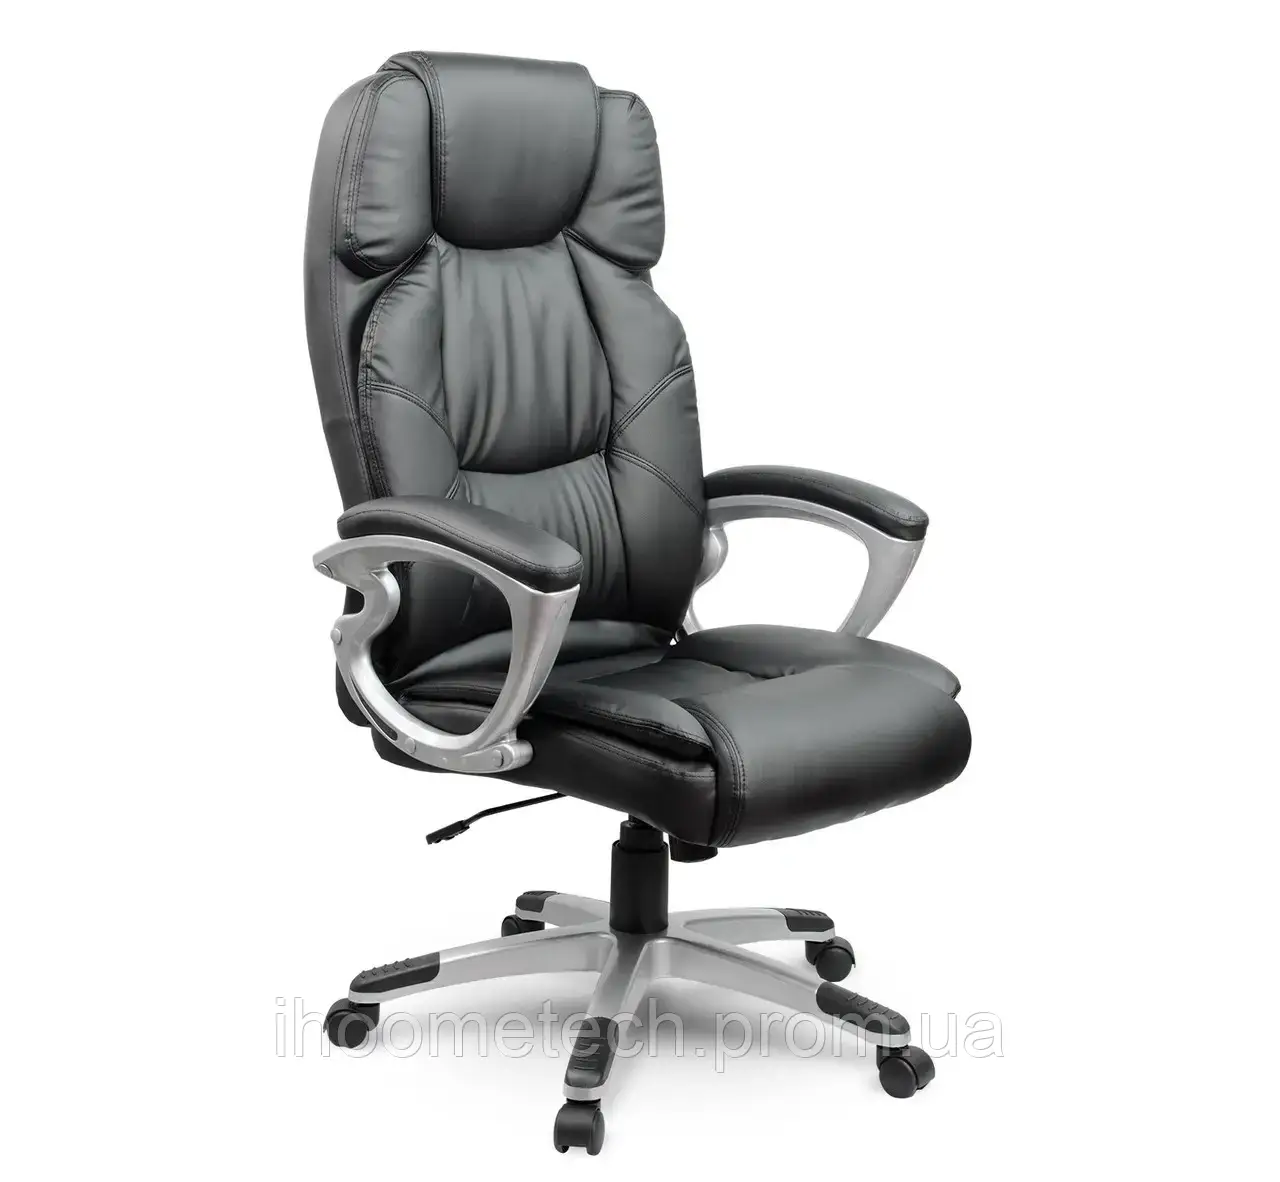 Кресло офисное компьютерное   Sofotel EG-227 комфортное офисное кресло (Офисные и компьютерные кресла)